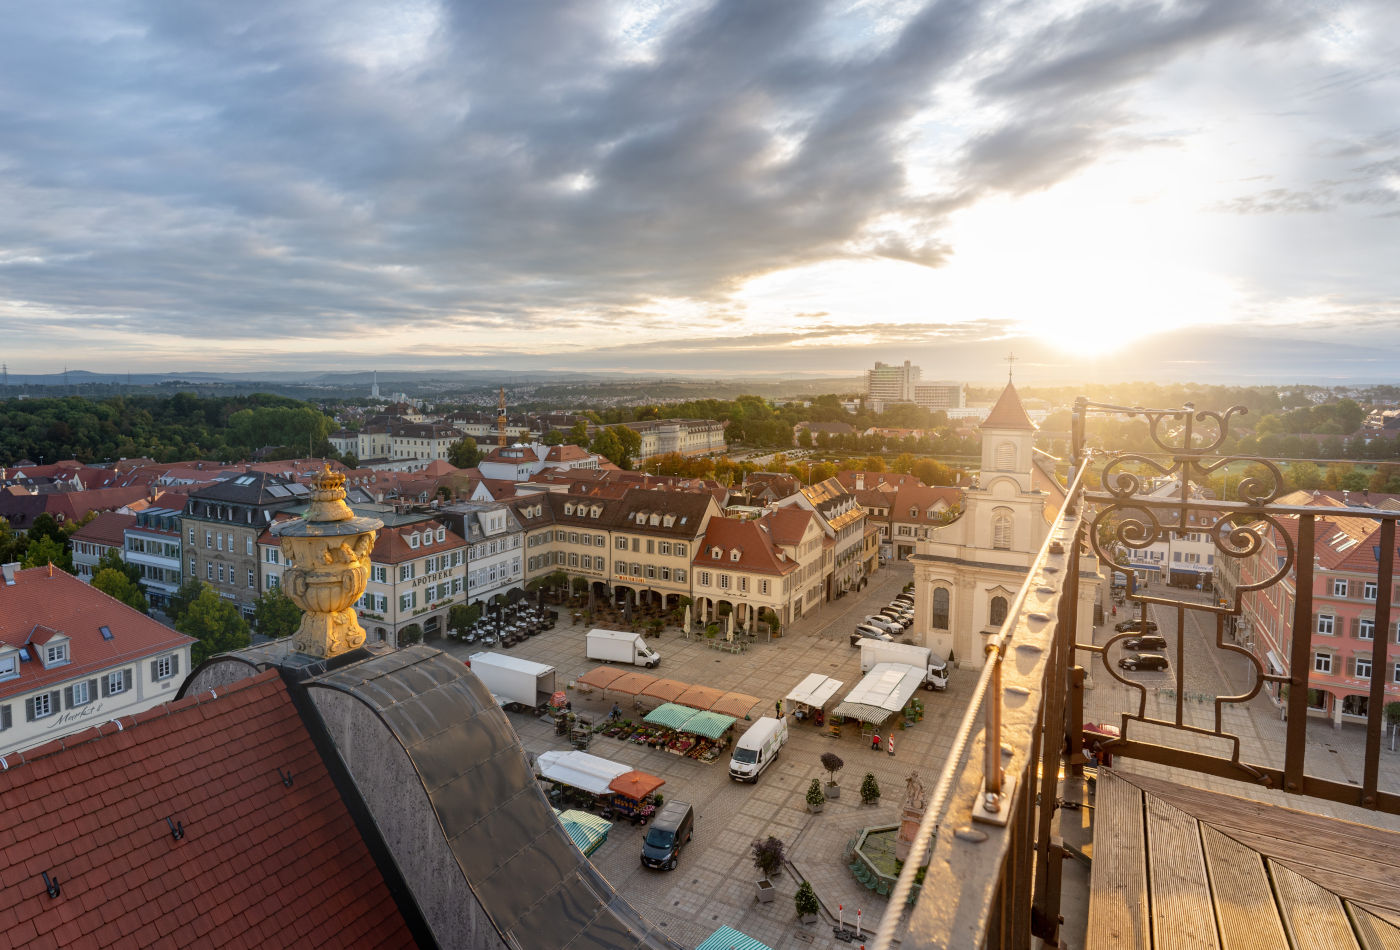 Marktplatz zum Sonnenaufgang aus der Vogelperspektive mit Blick auf die Katholische Kirche